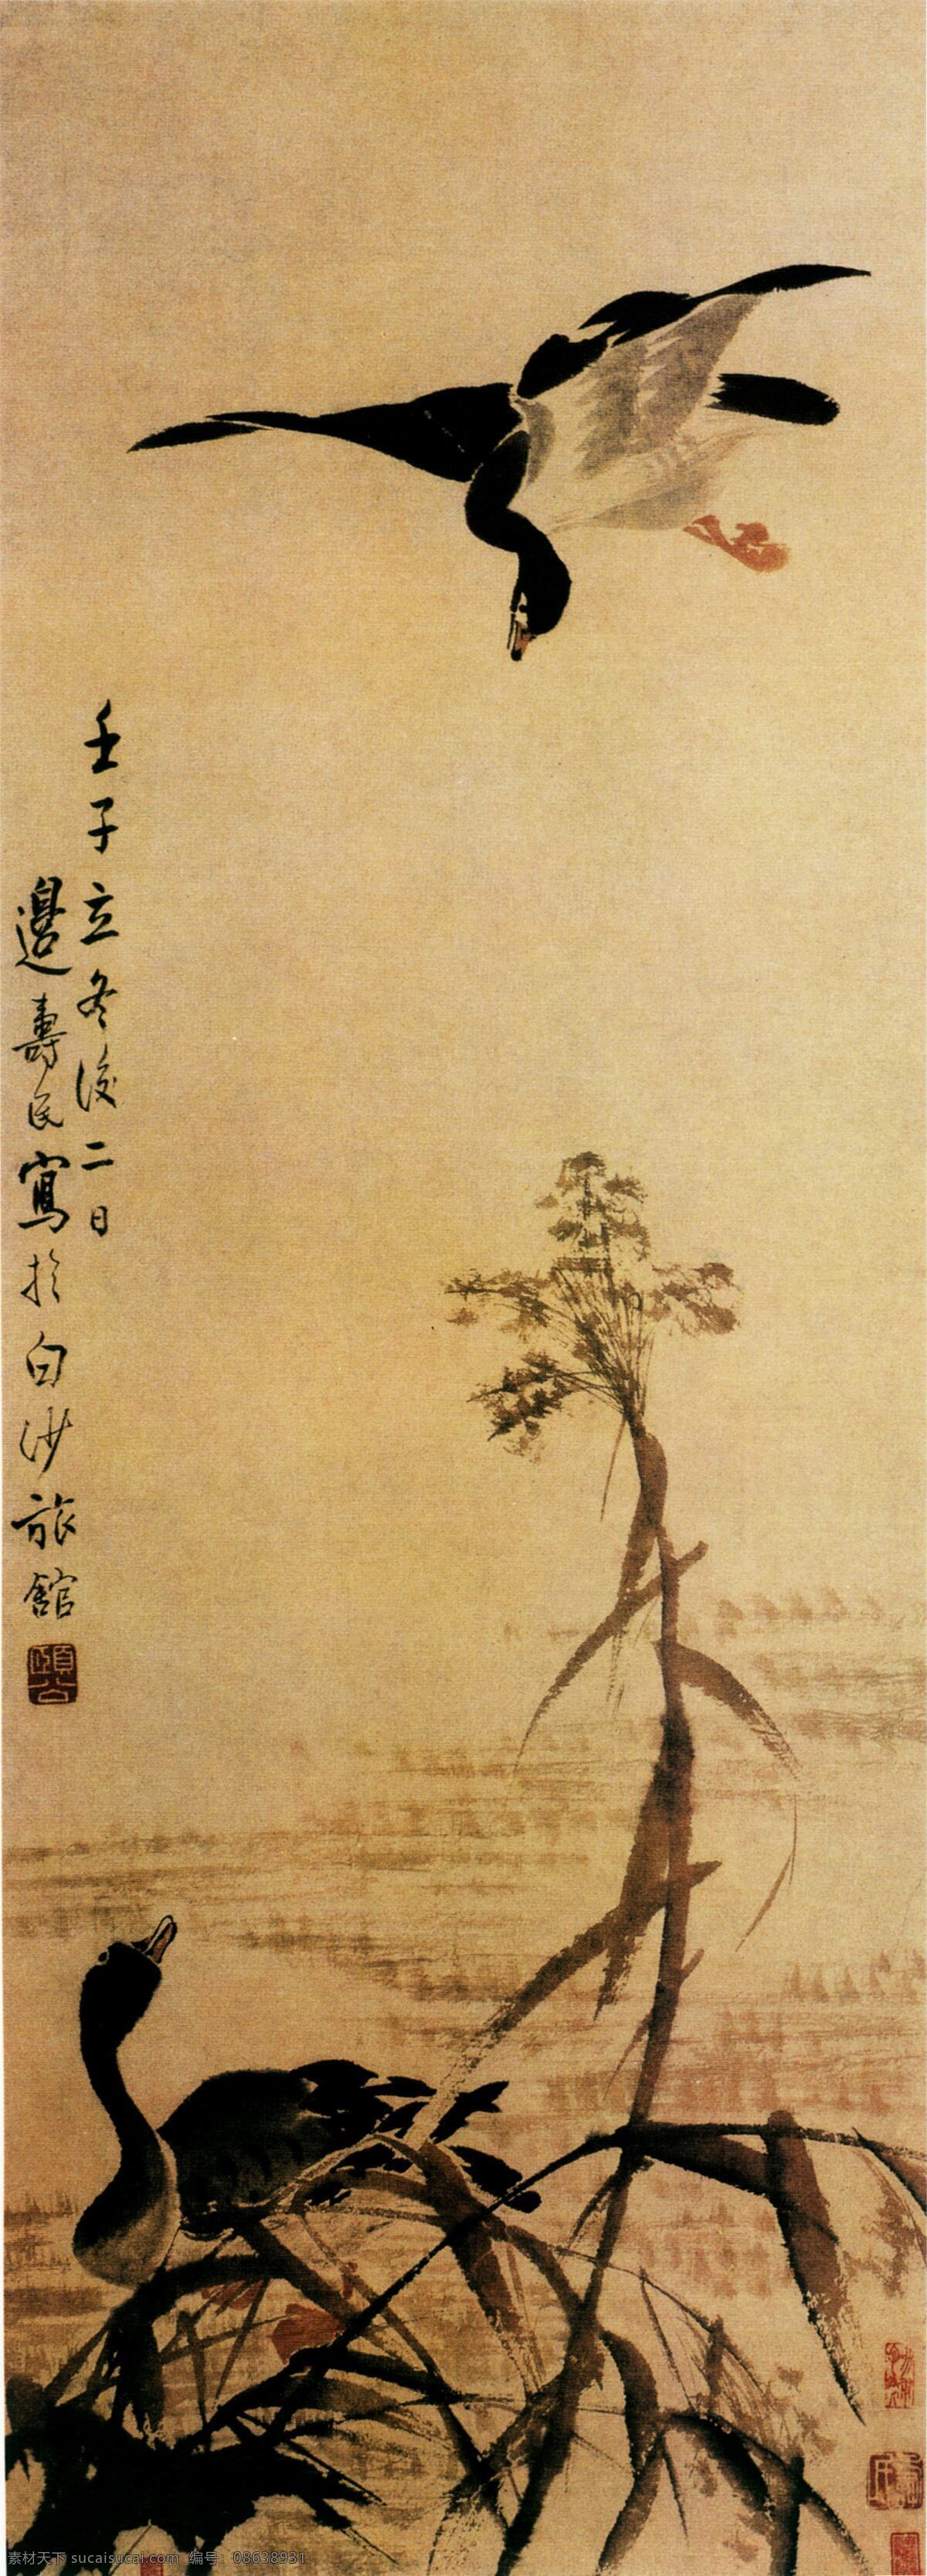 中国 花鸟画 古画 国画 绘画 水墨 中国画 文化艺术